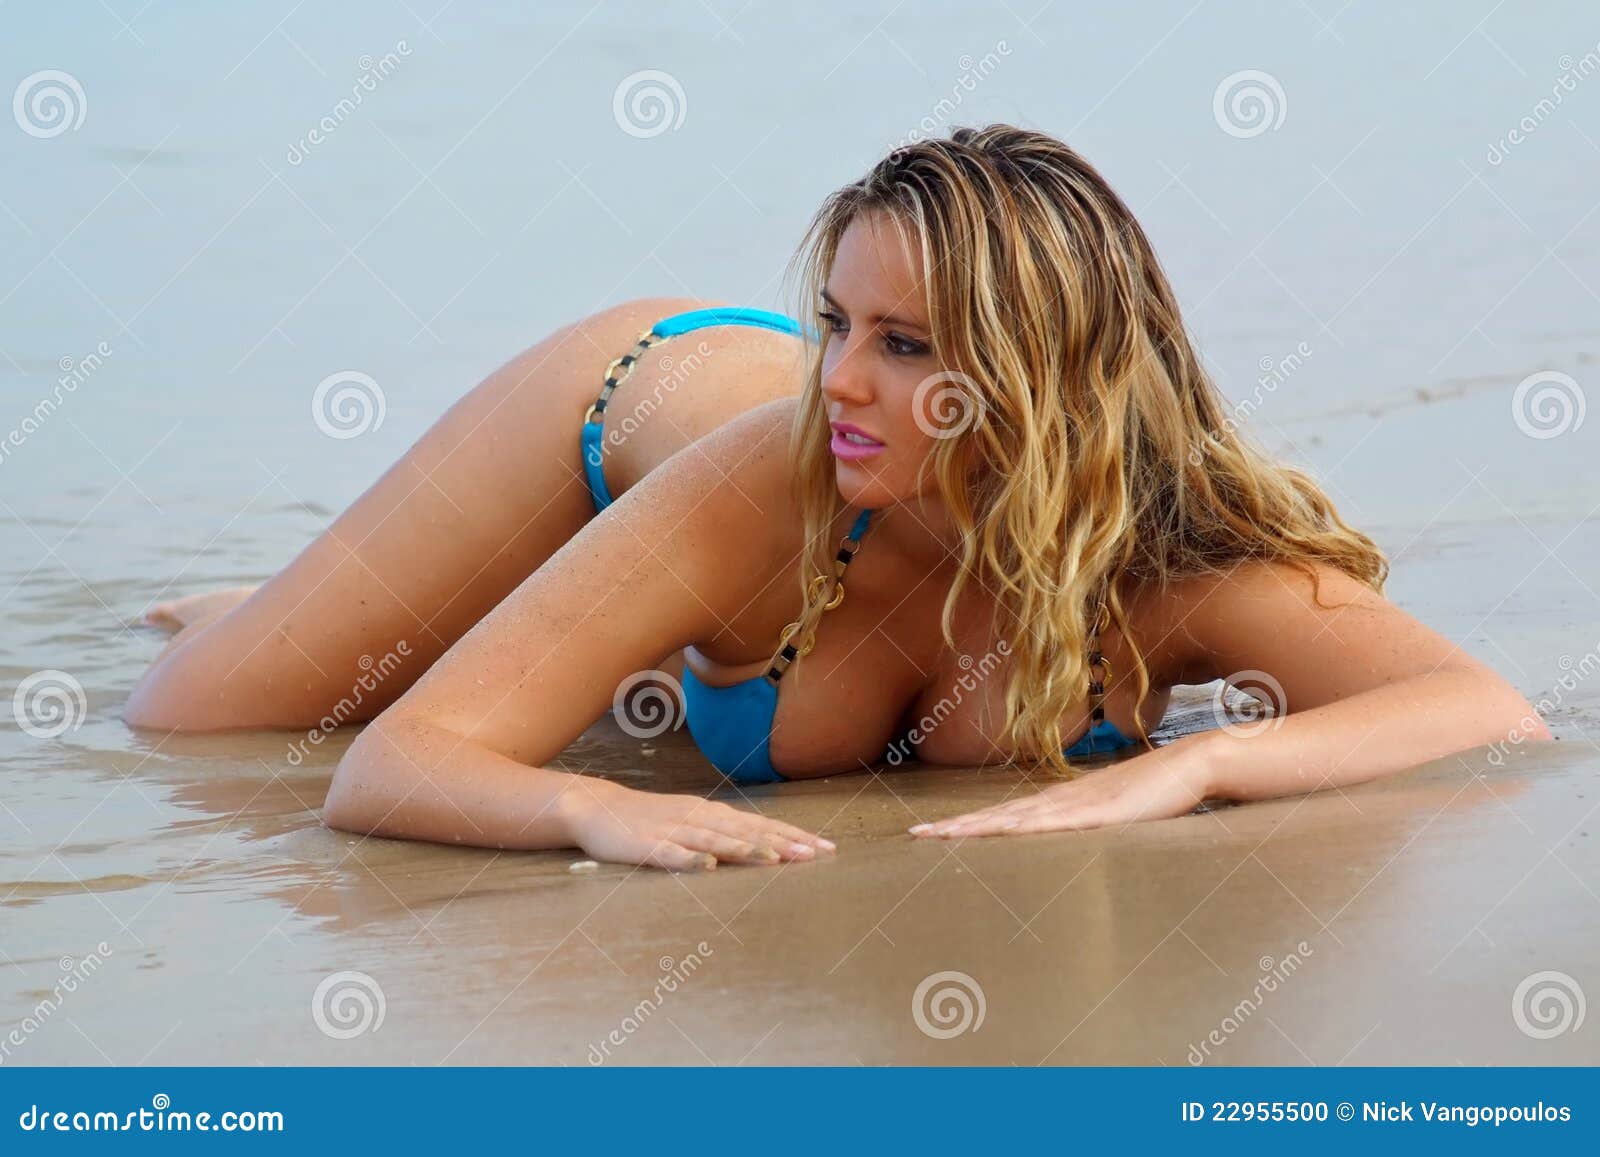 151,090 Beach Bikini Girl Stock Photos